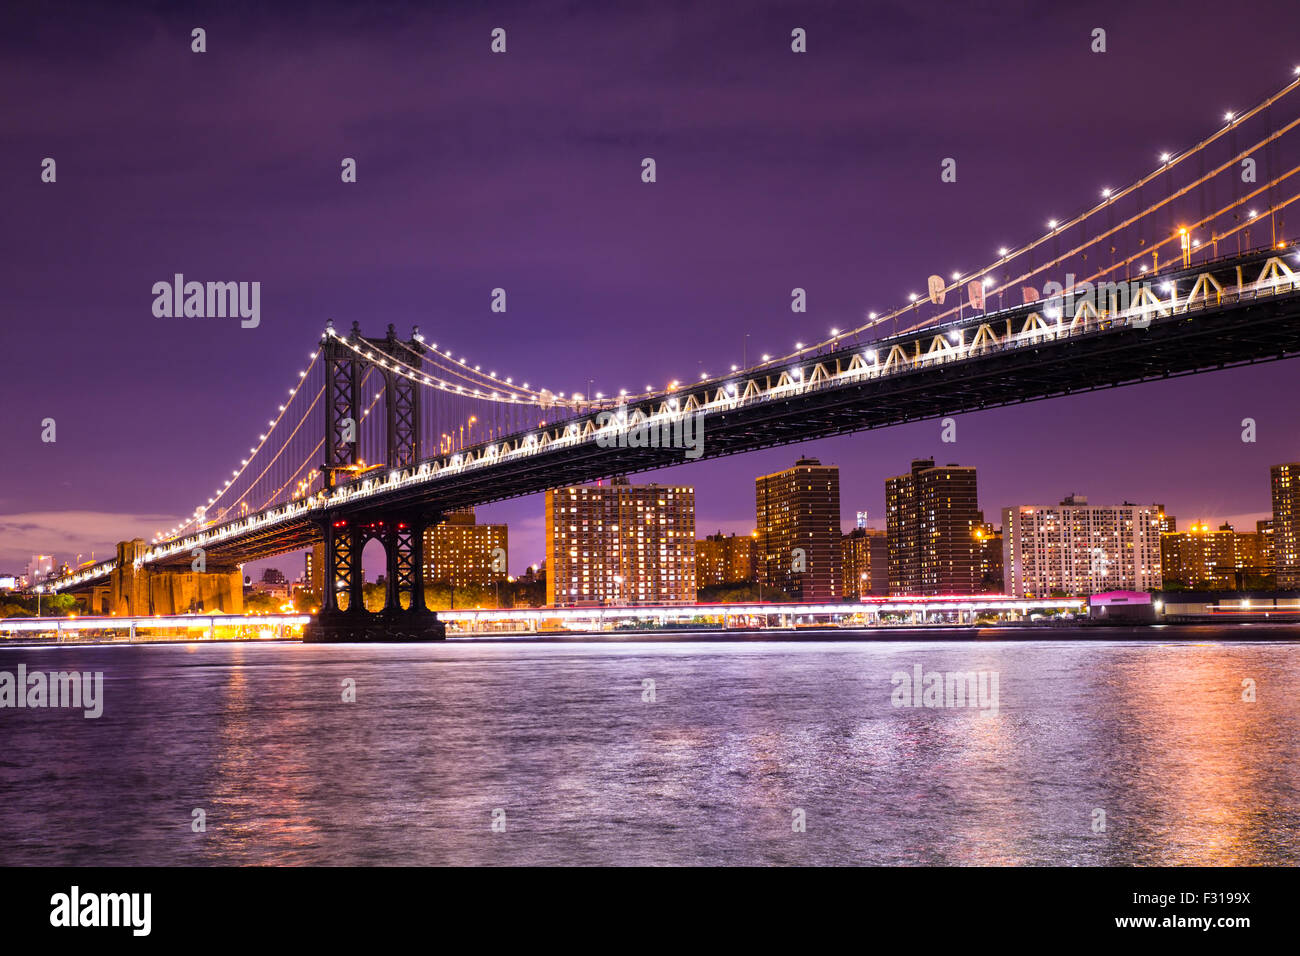 Vue nocturne de la pont de Manhattan à New York City Banque D'Images